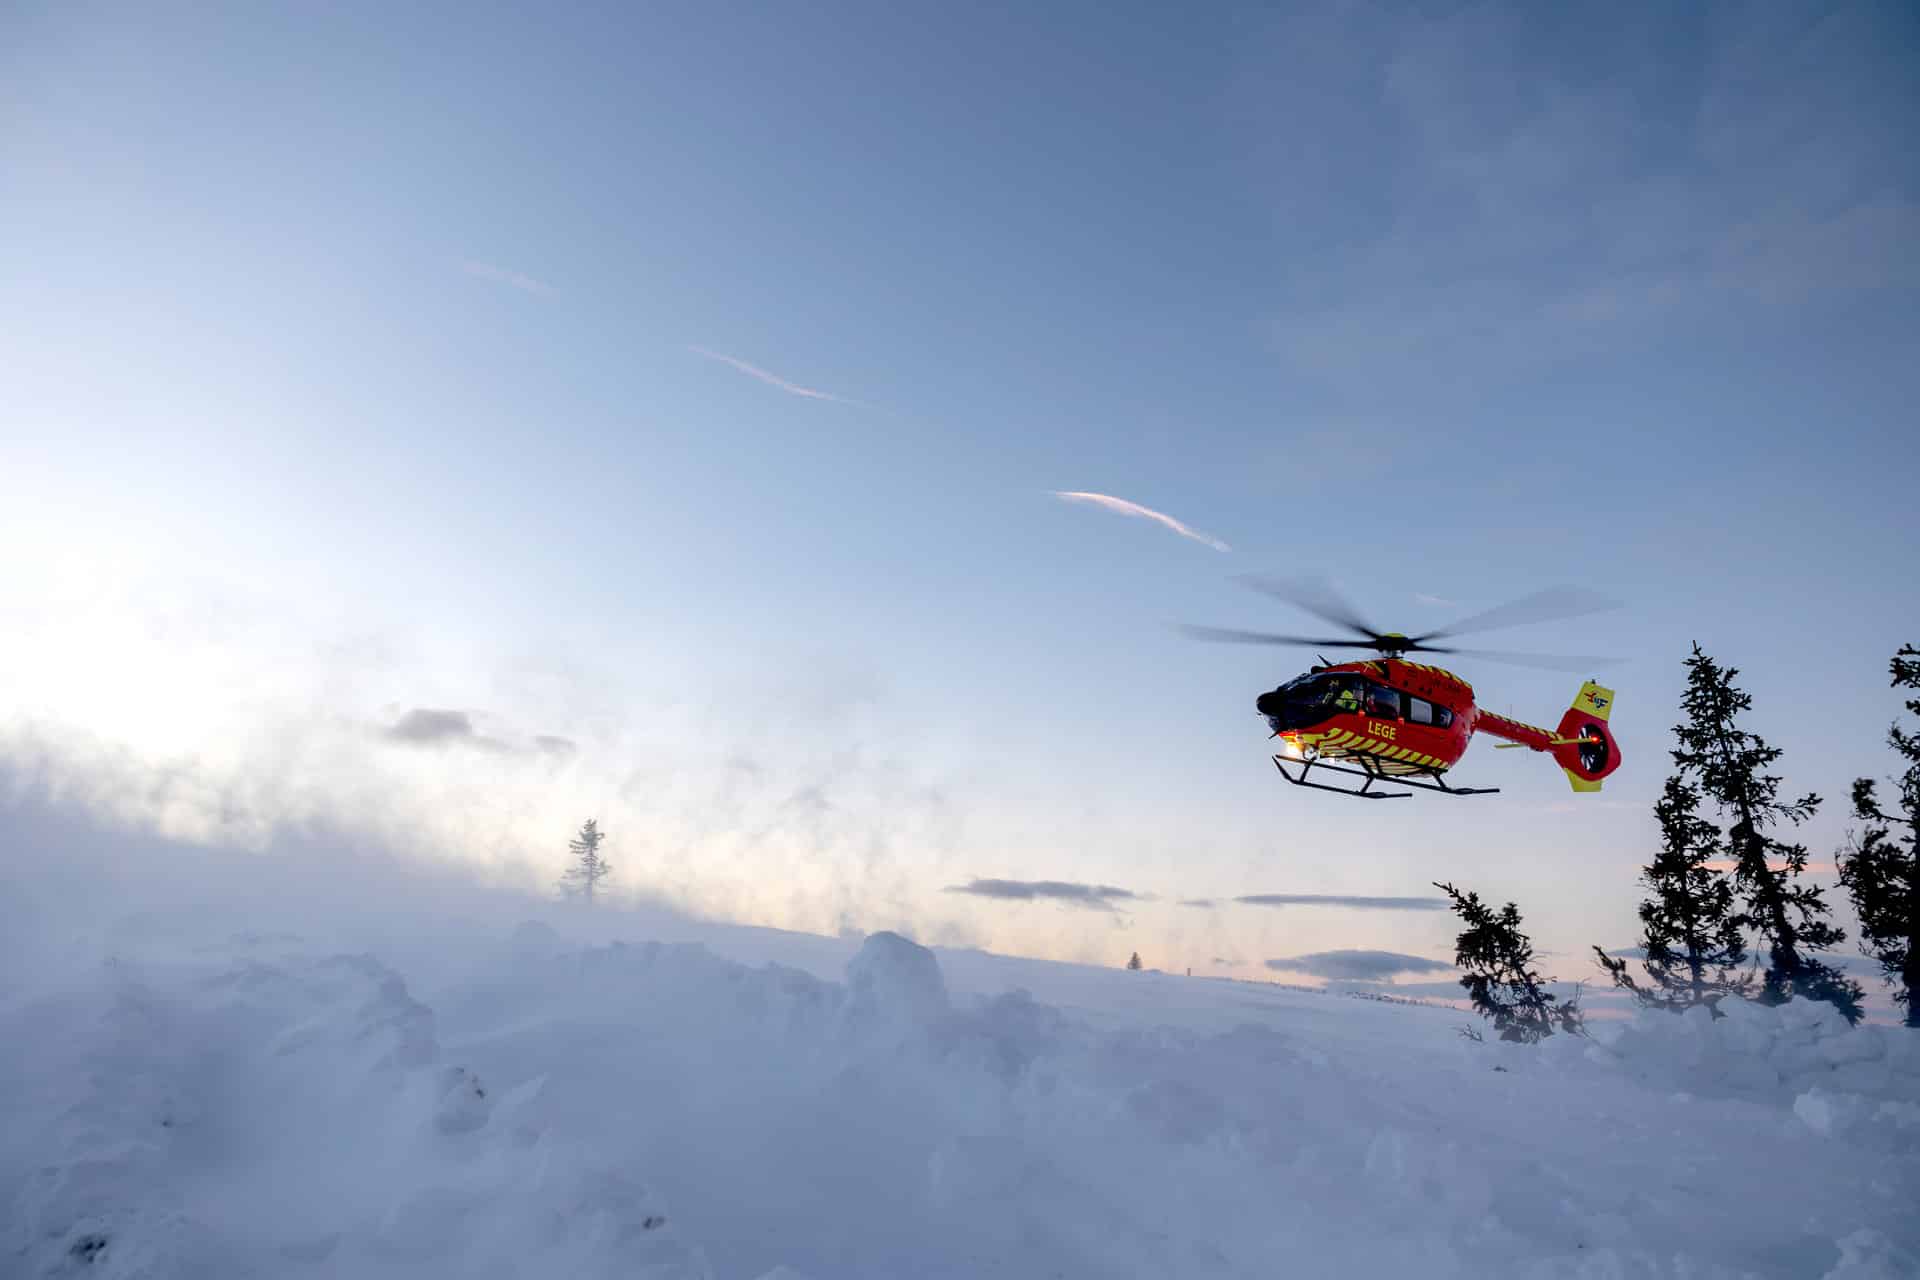 Bilde av utviklingshelikopter i snølandskap